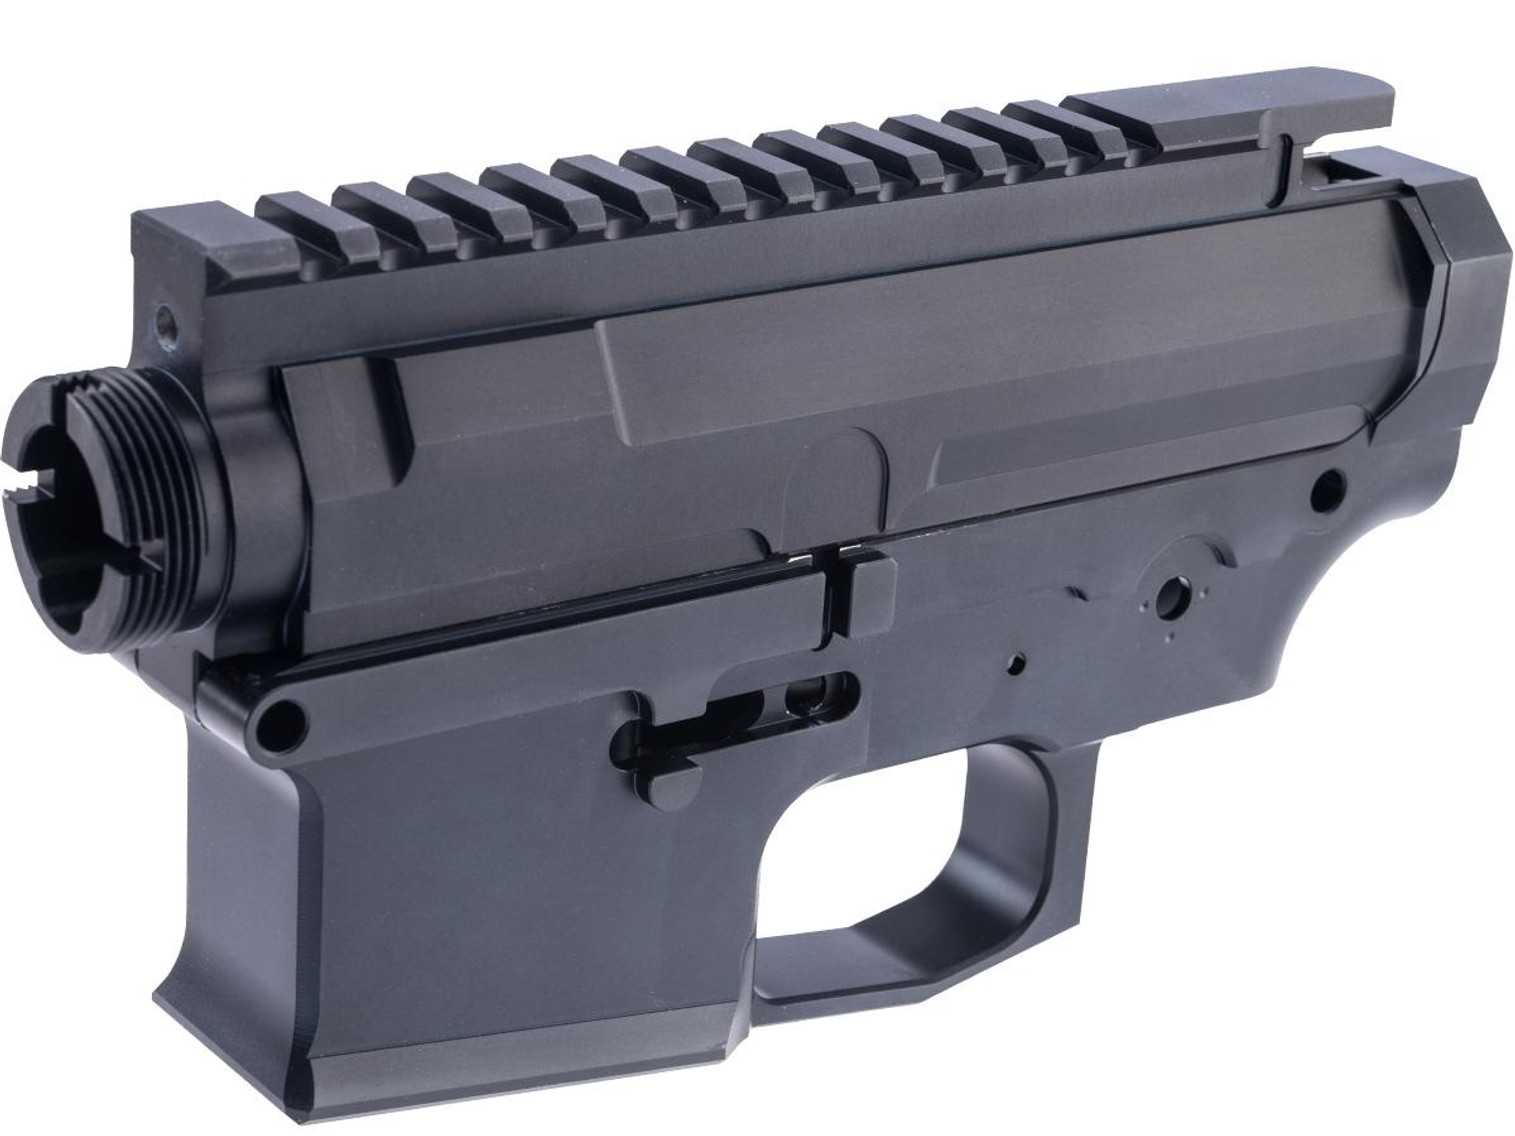 RETRO Arms CNC Receiver for M4 Series Airsoft AEG
